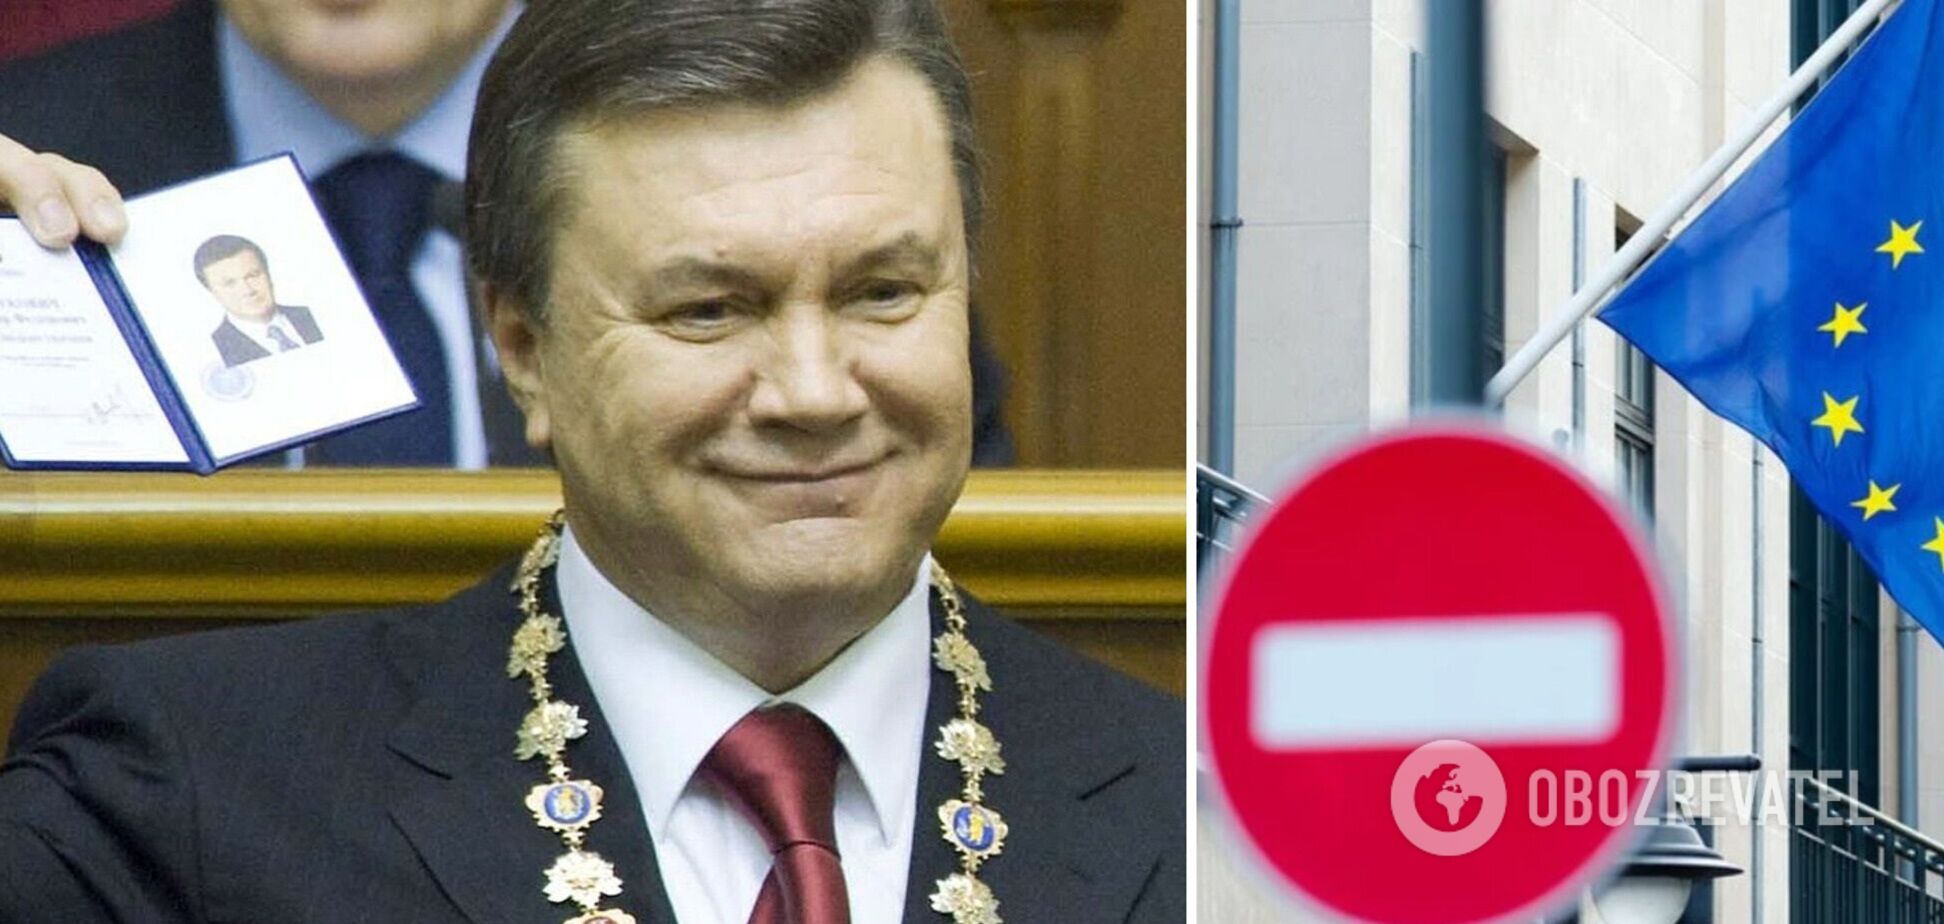 ЕС продлил санкции против Януковича всего на 6 месяцев вместо ожидаемого 1 года